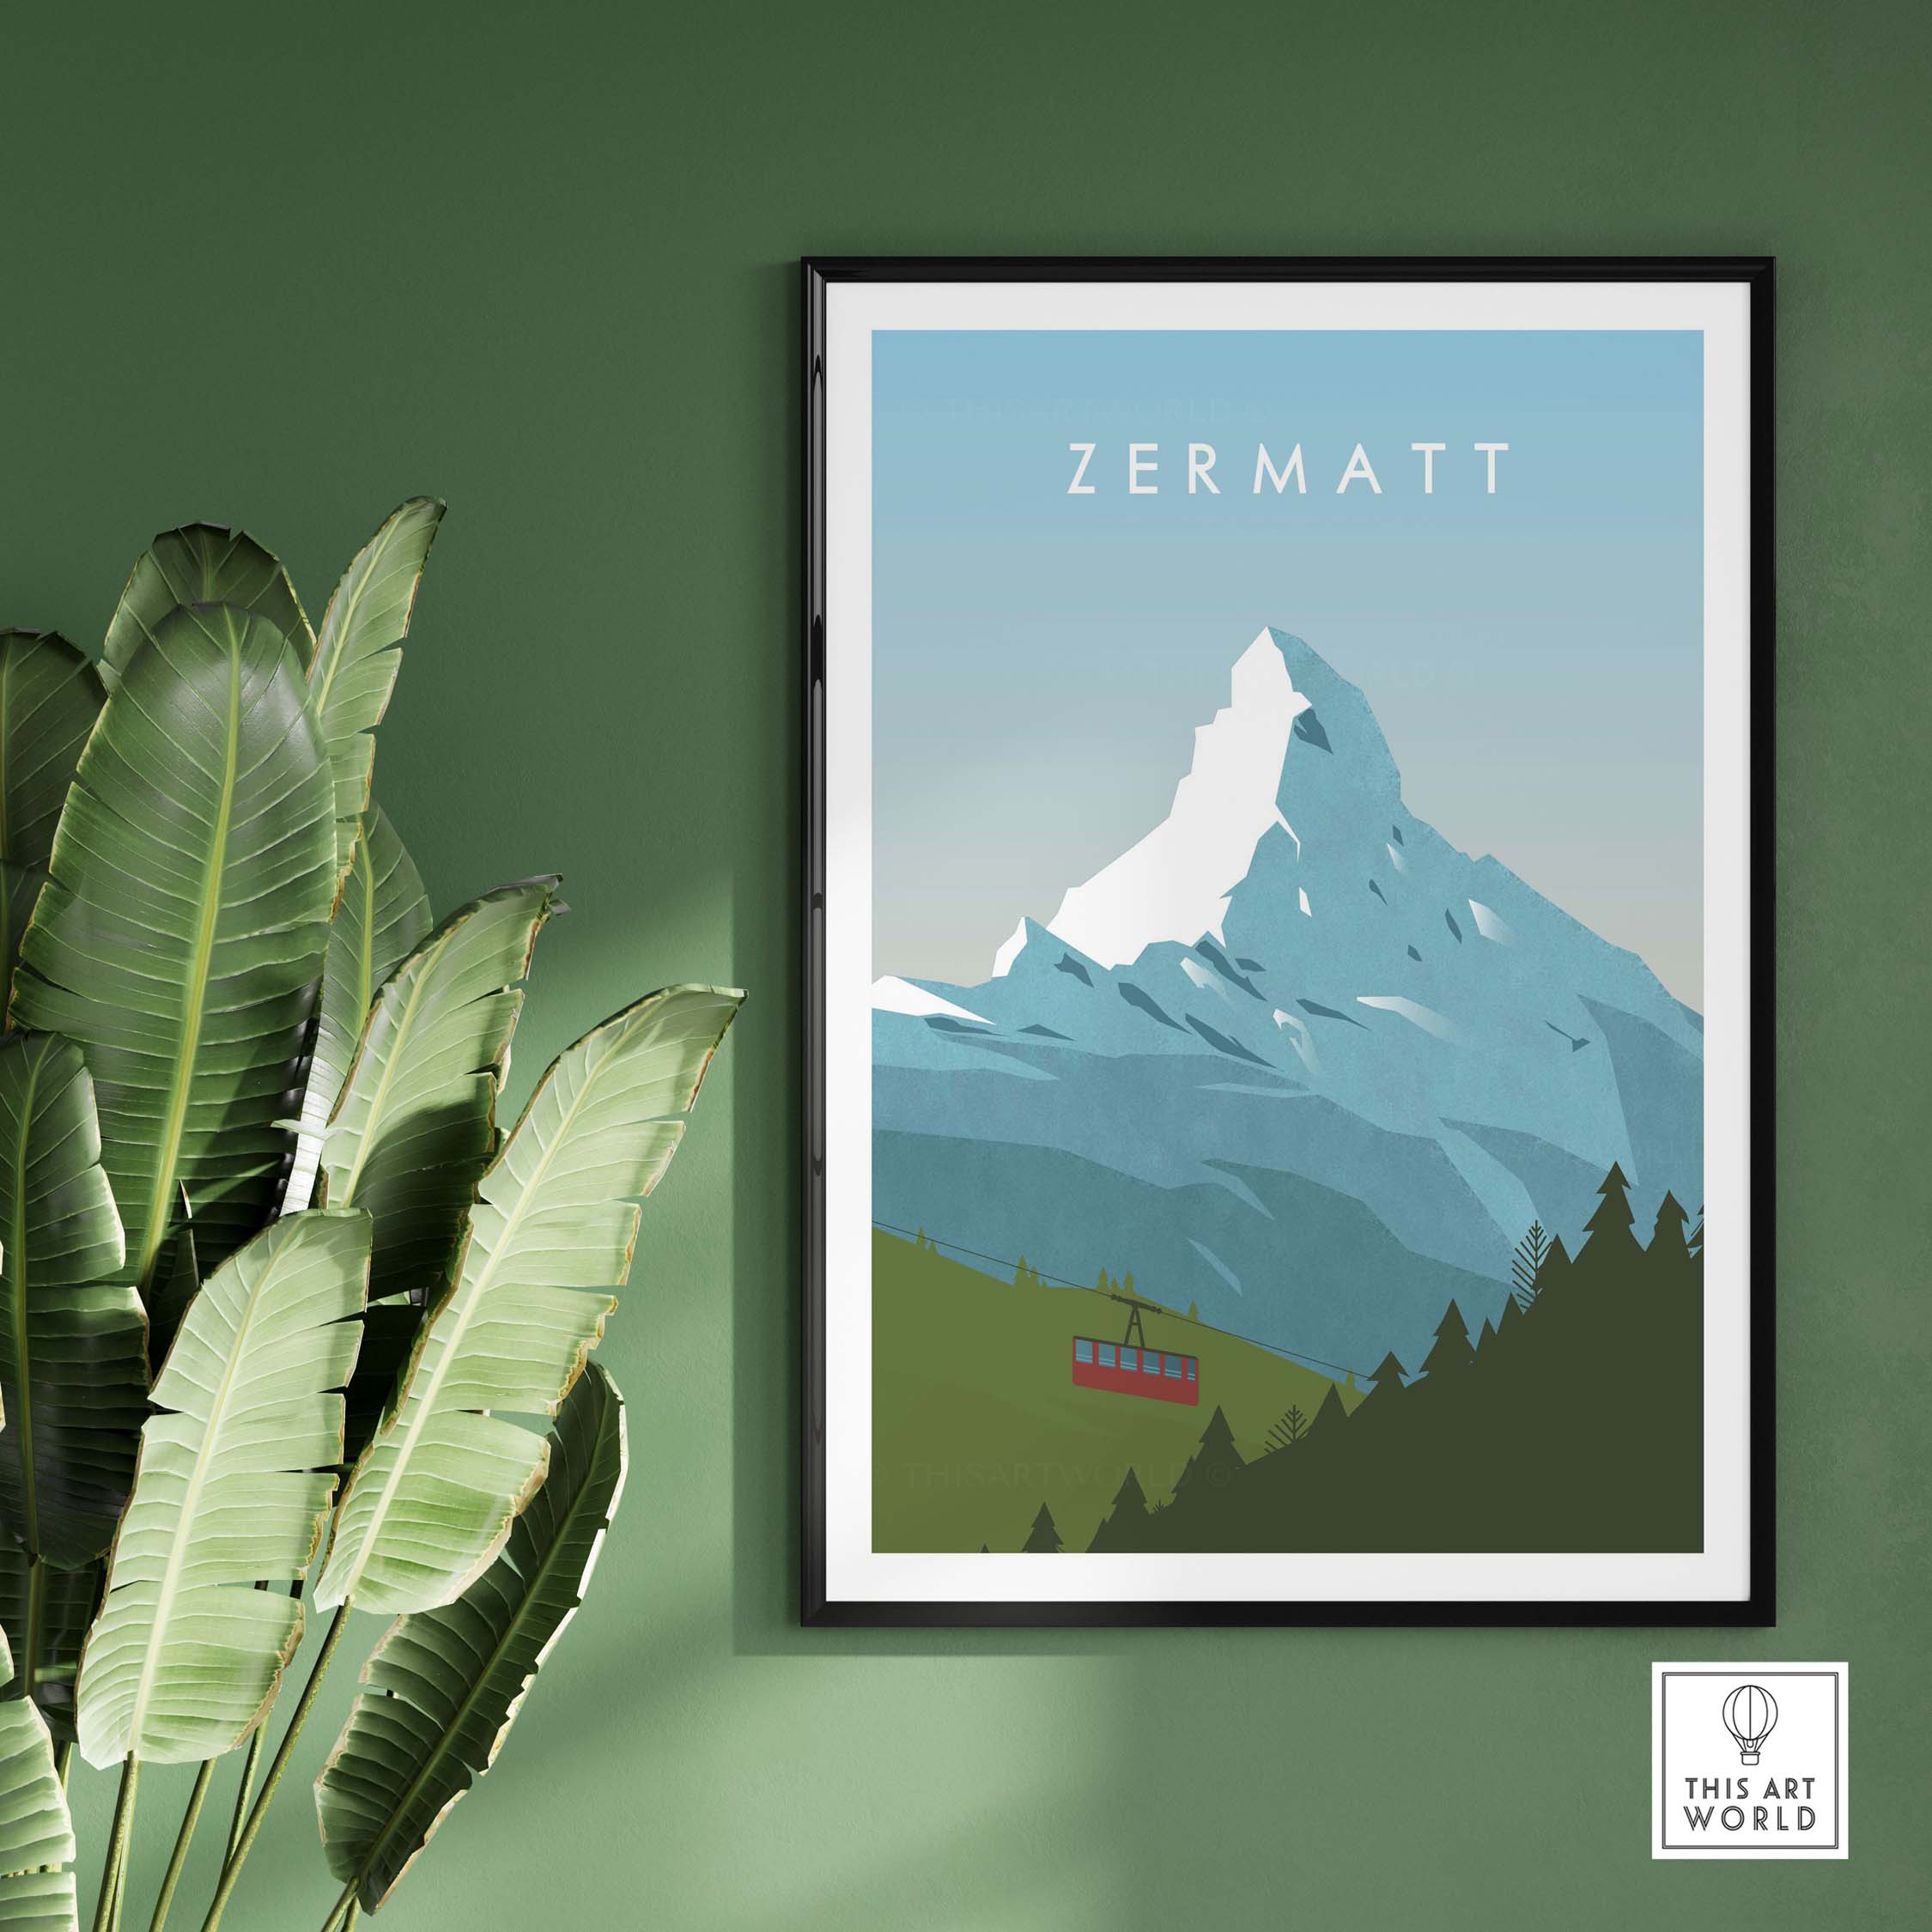 zermatt print wall art poster